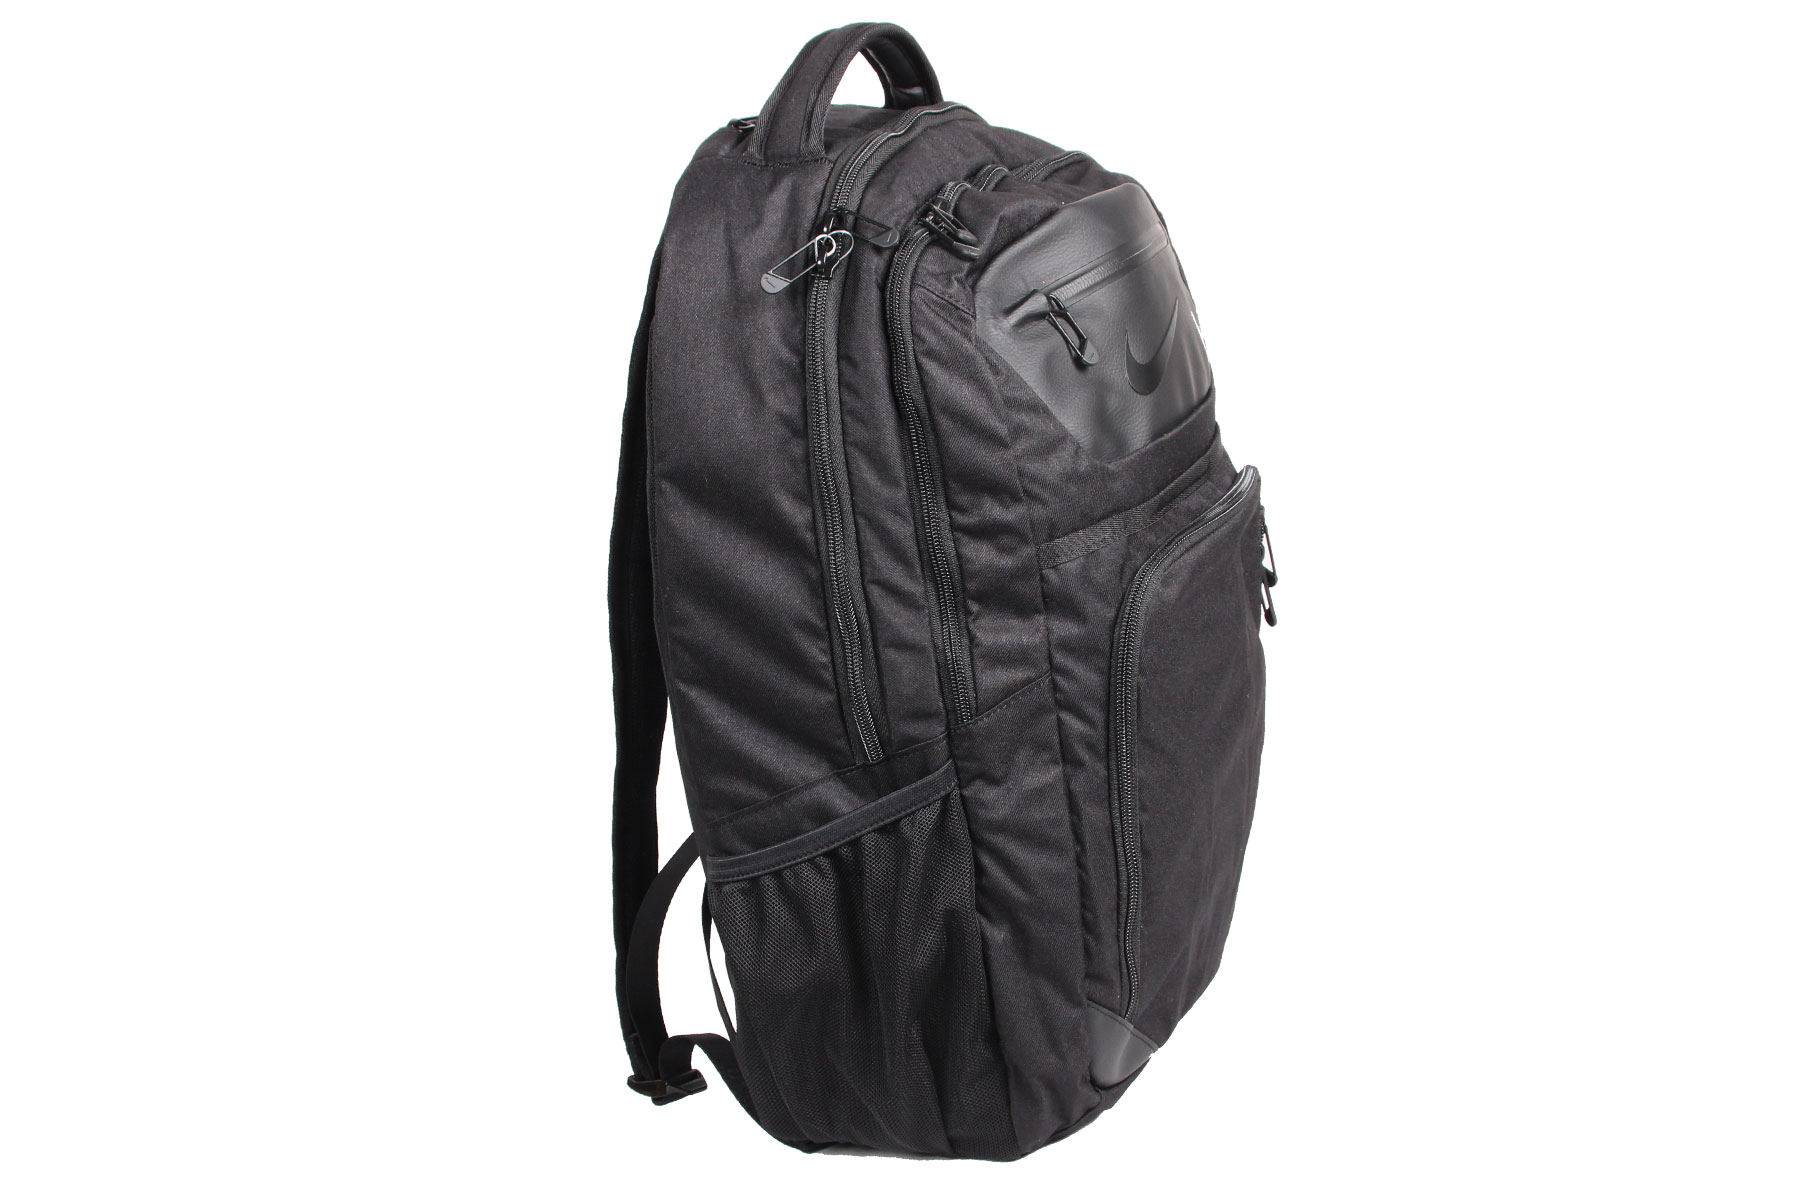 Nike Golf Departure Backpack III Bag | Online Golf